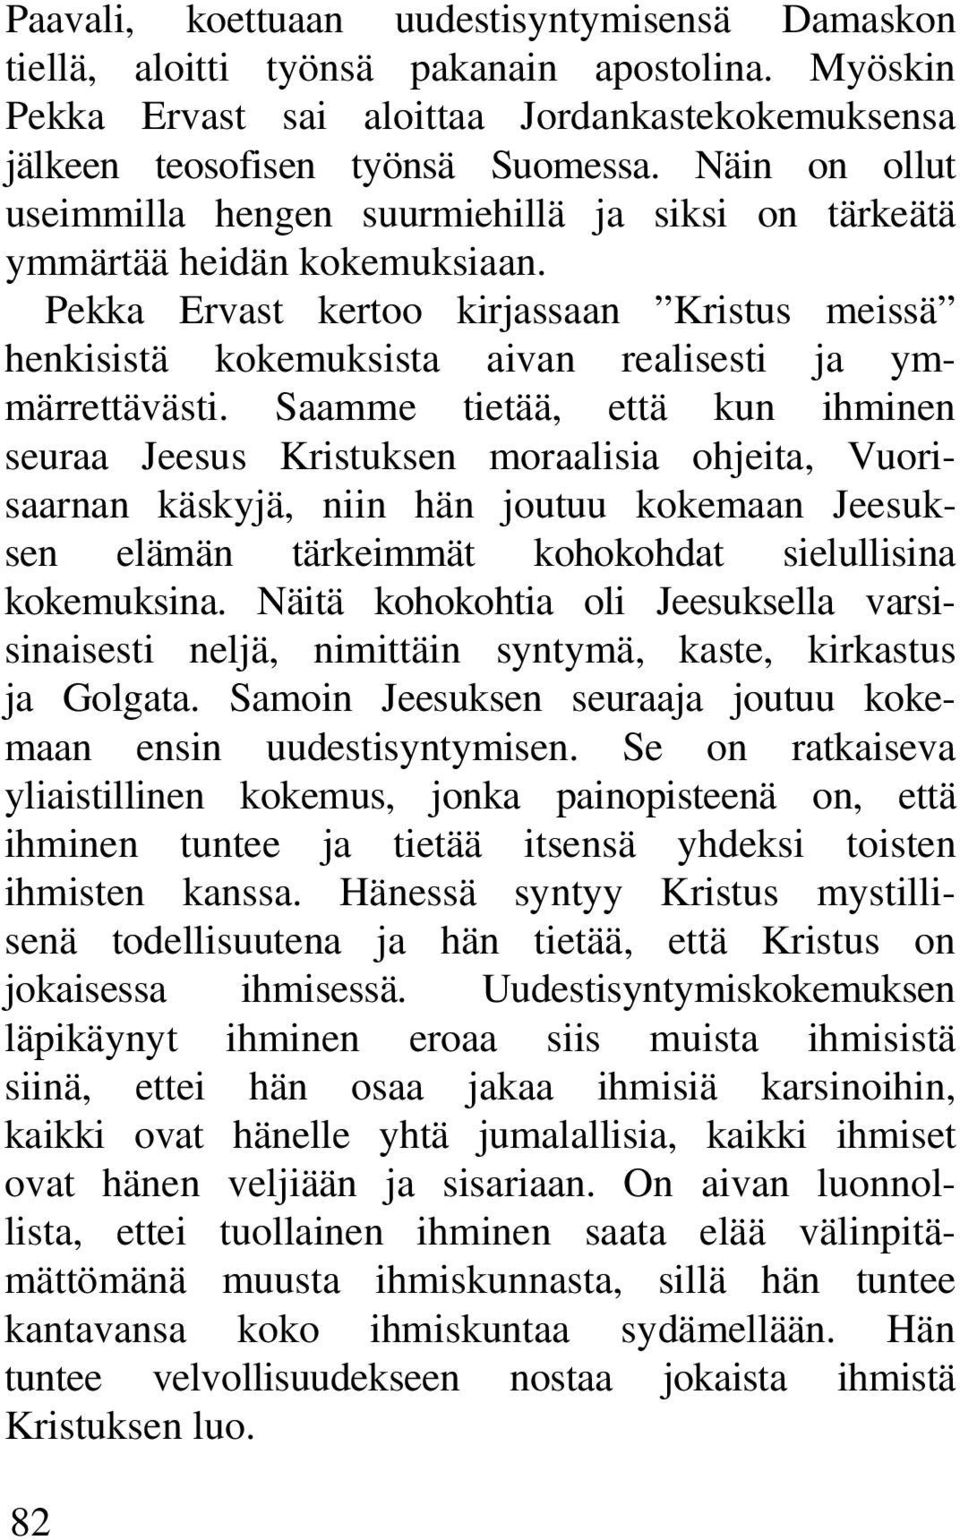 Pekka Ervast kertoo kirjassaan Kristus meissä henkisistä kokemuksista aivan realisesti ja ymmärrettävästi.